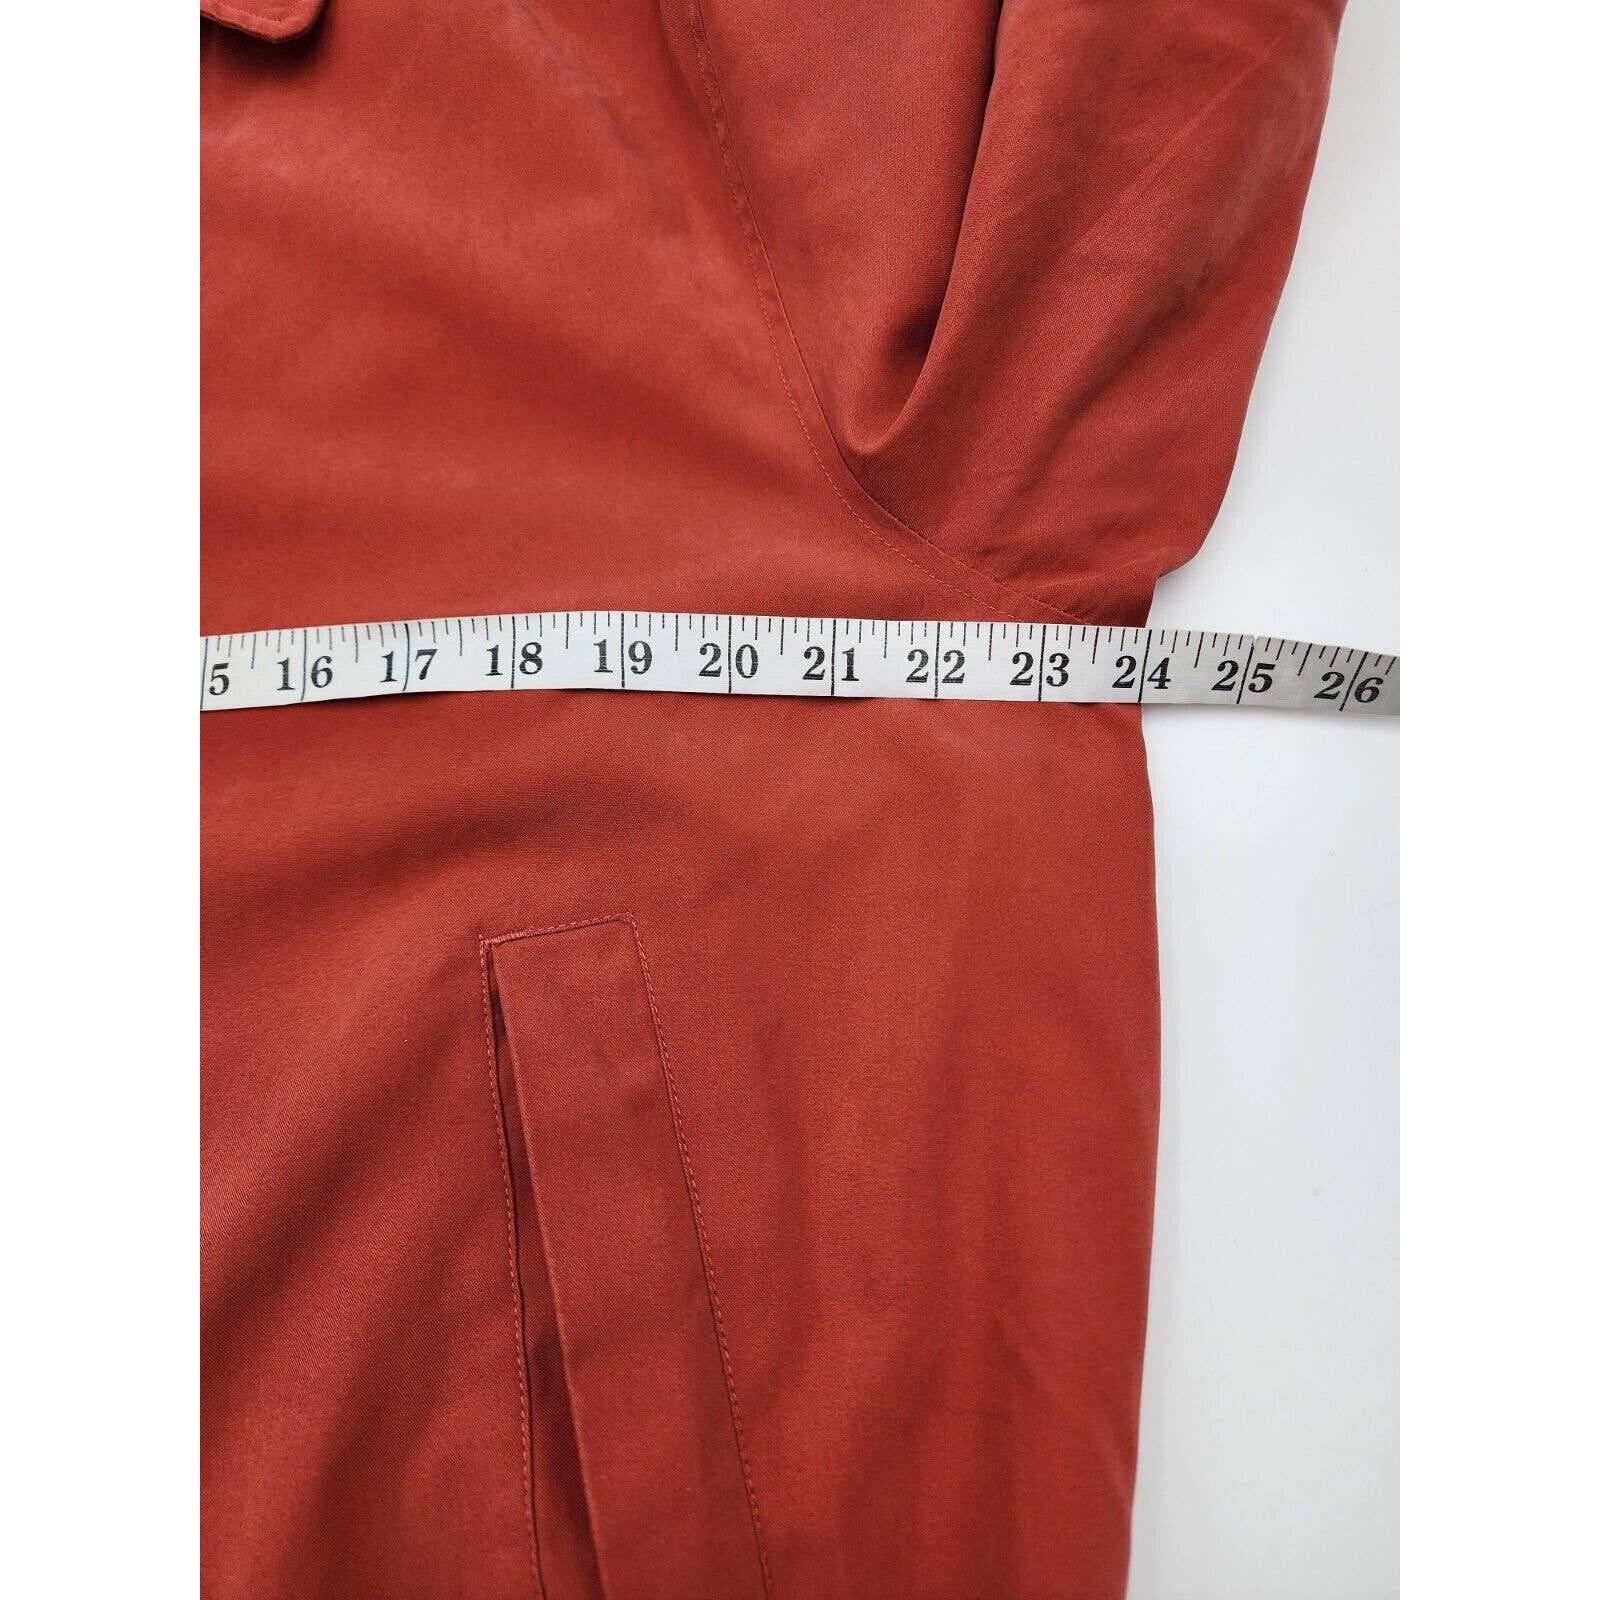 Orvis Orvis Signature Series Jacket Soft Faux Suede Burnt Orange Size US M / EU 48-50 / 2 - 13 Thumbnail